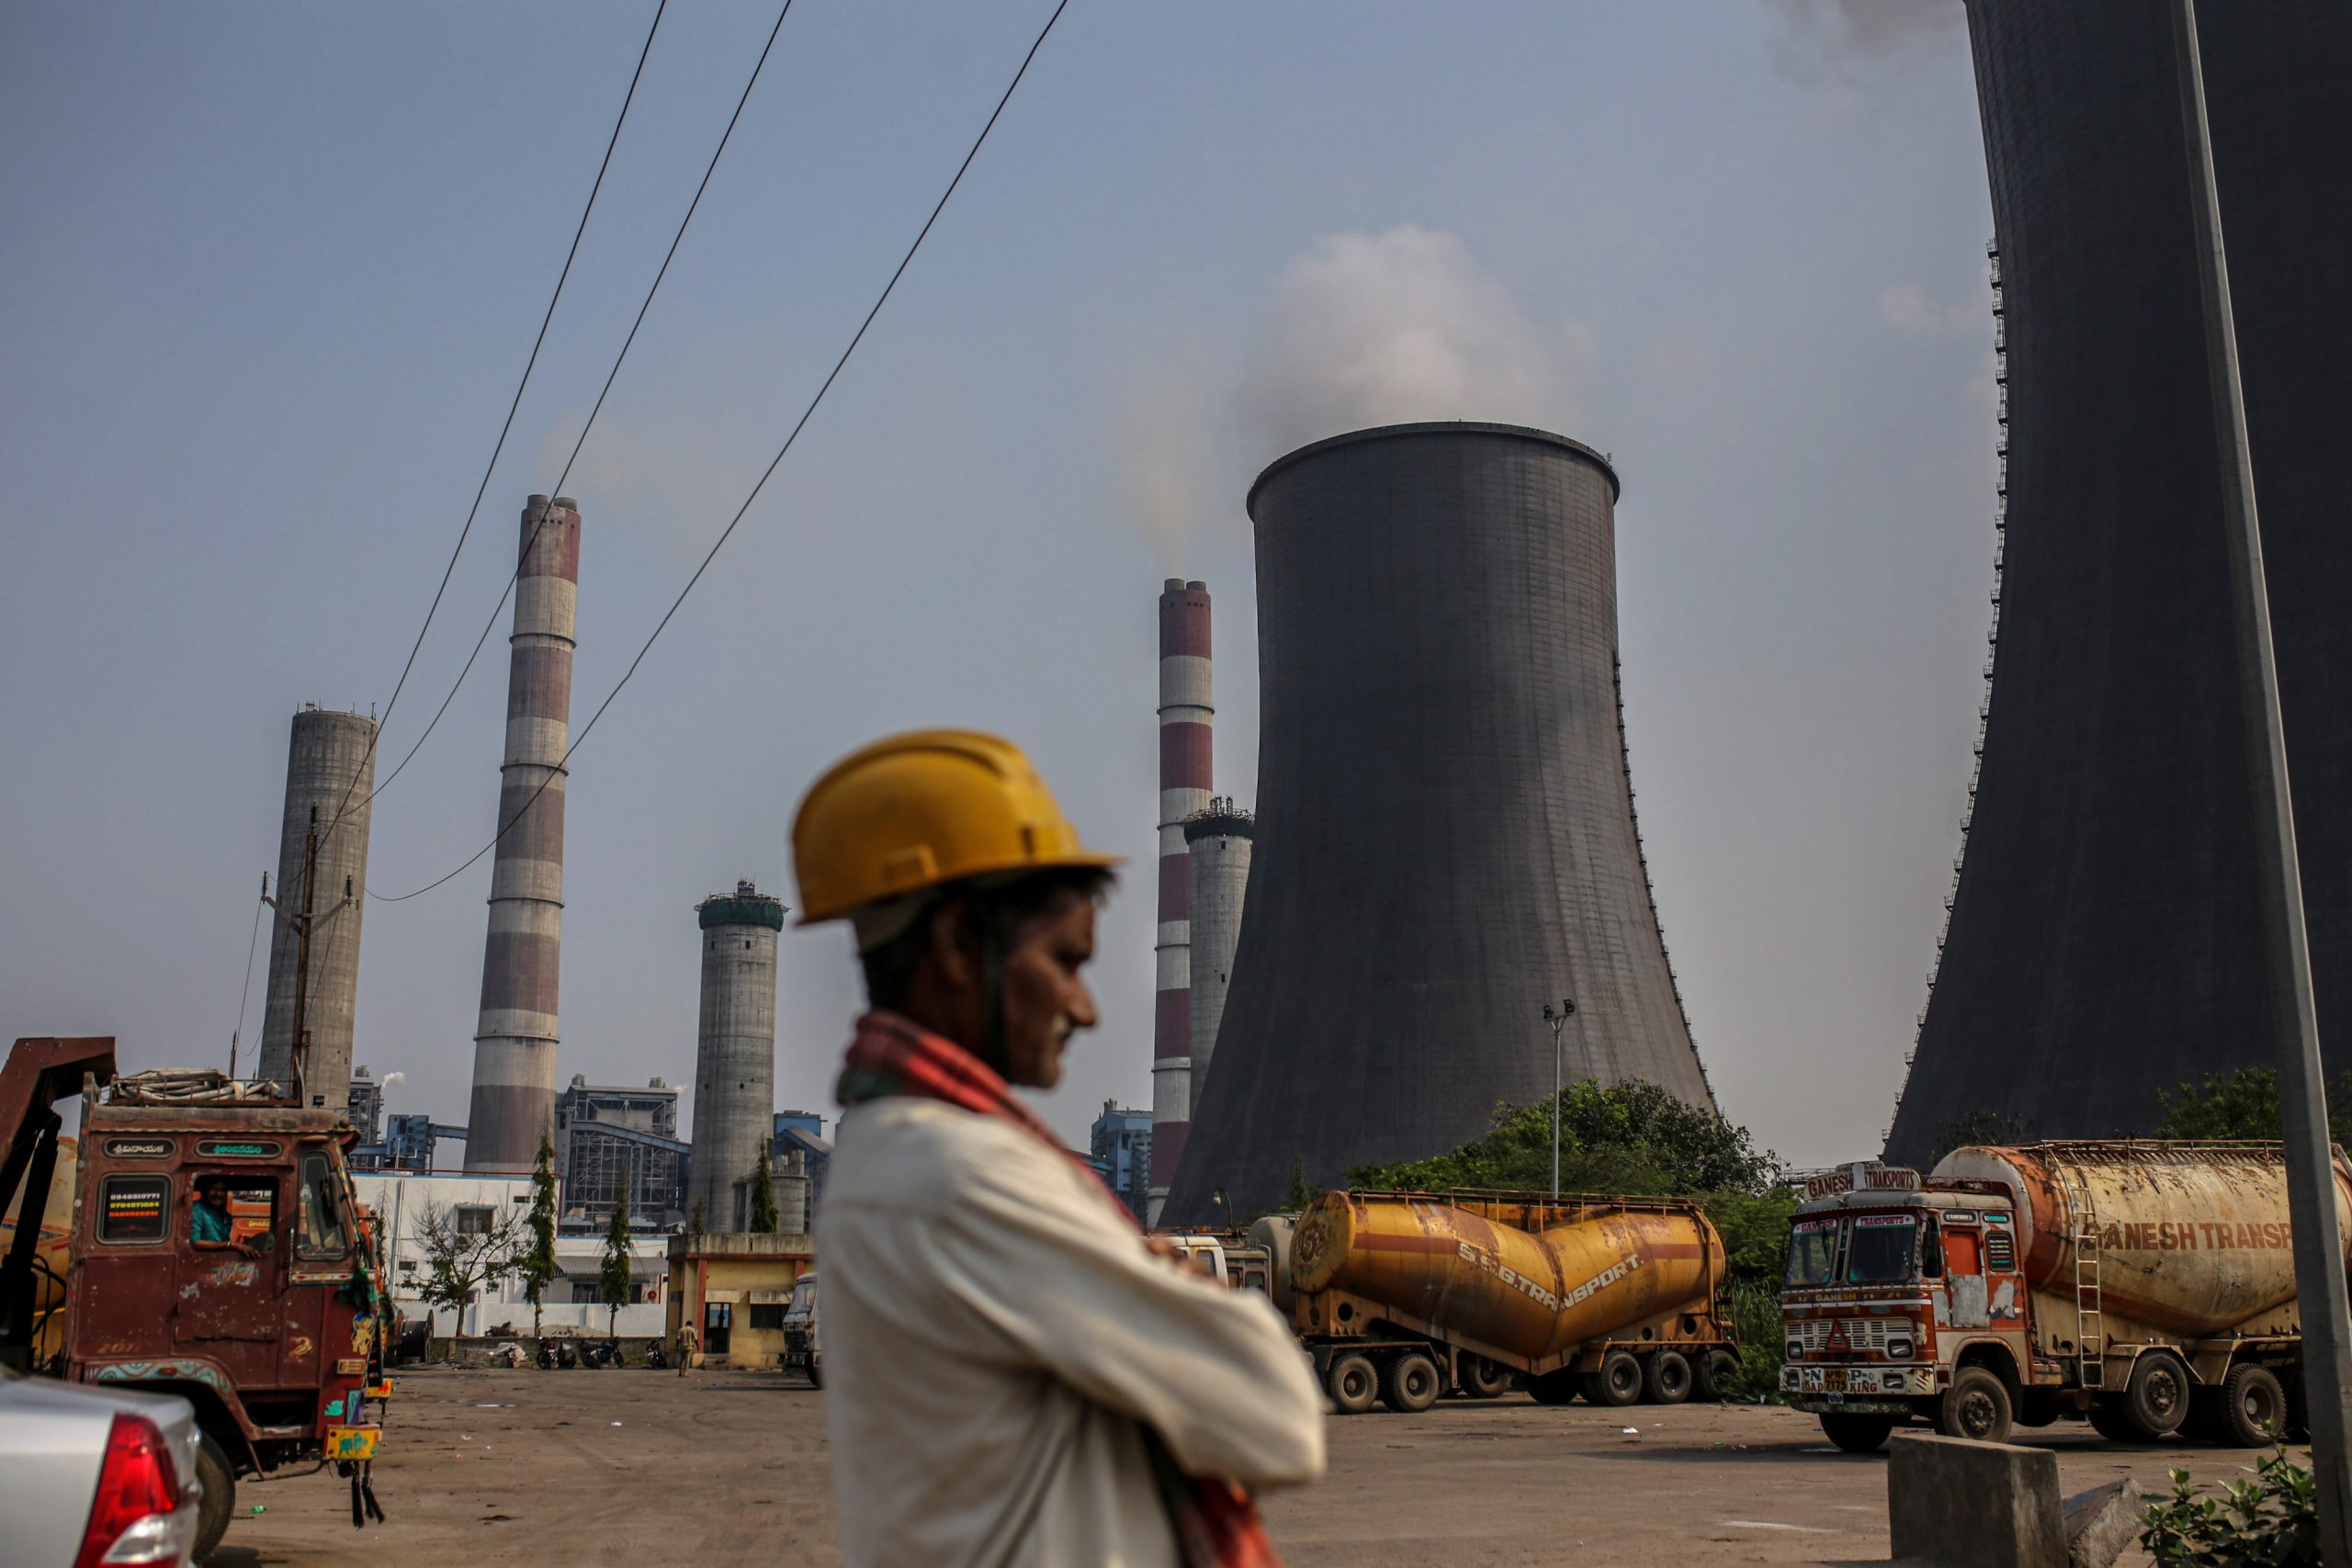 عامل يقف بجوار إحدى محطات توليد الكهرباء العاملة بالفحم في الهند- الصورة من بلومبرغ